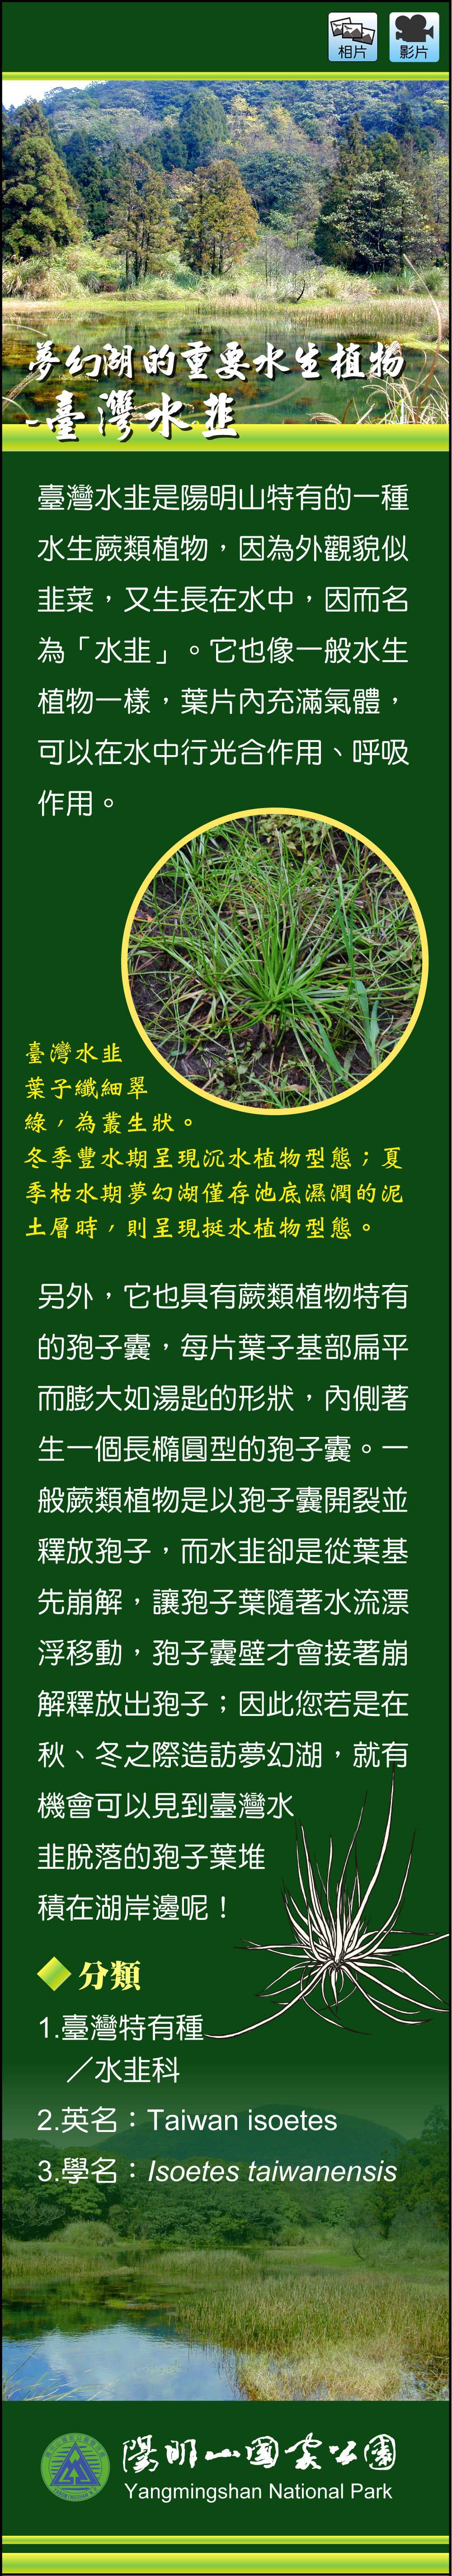 夢幻湖的重要水生植物-臺灣水韭